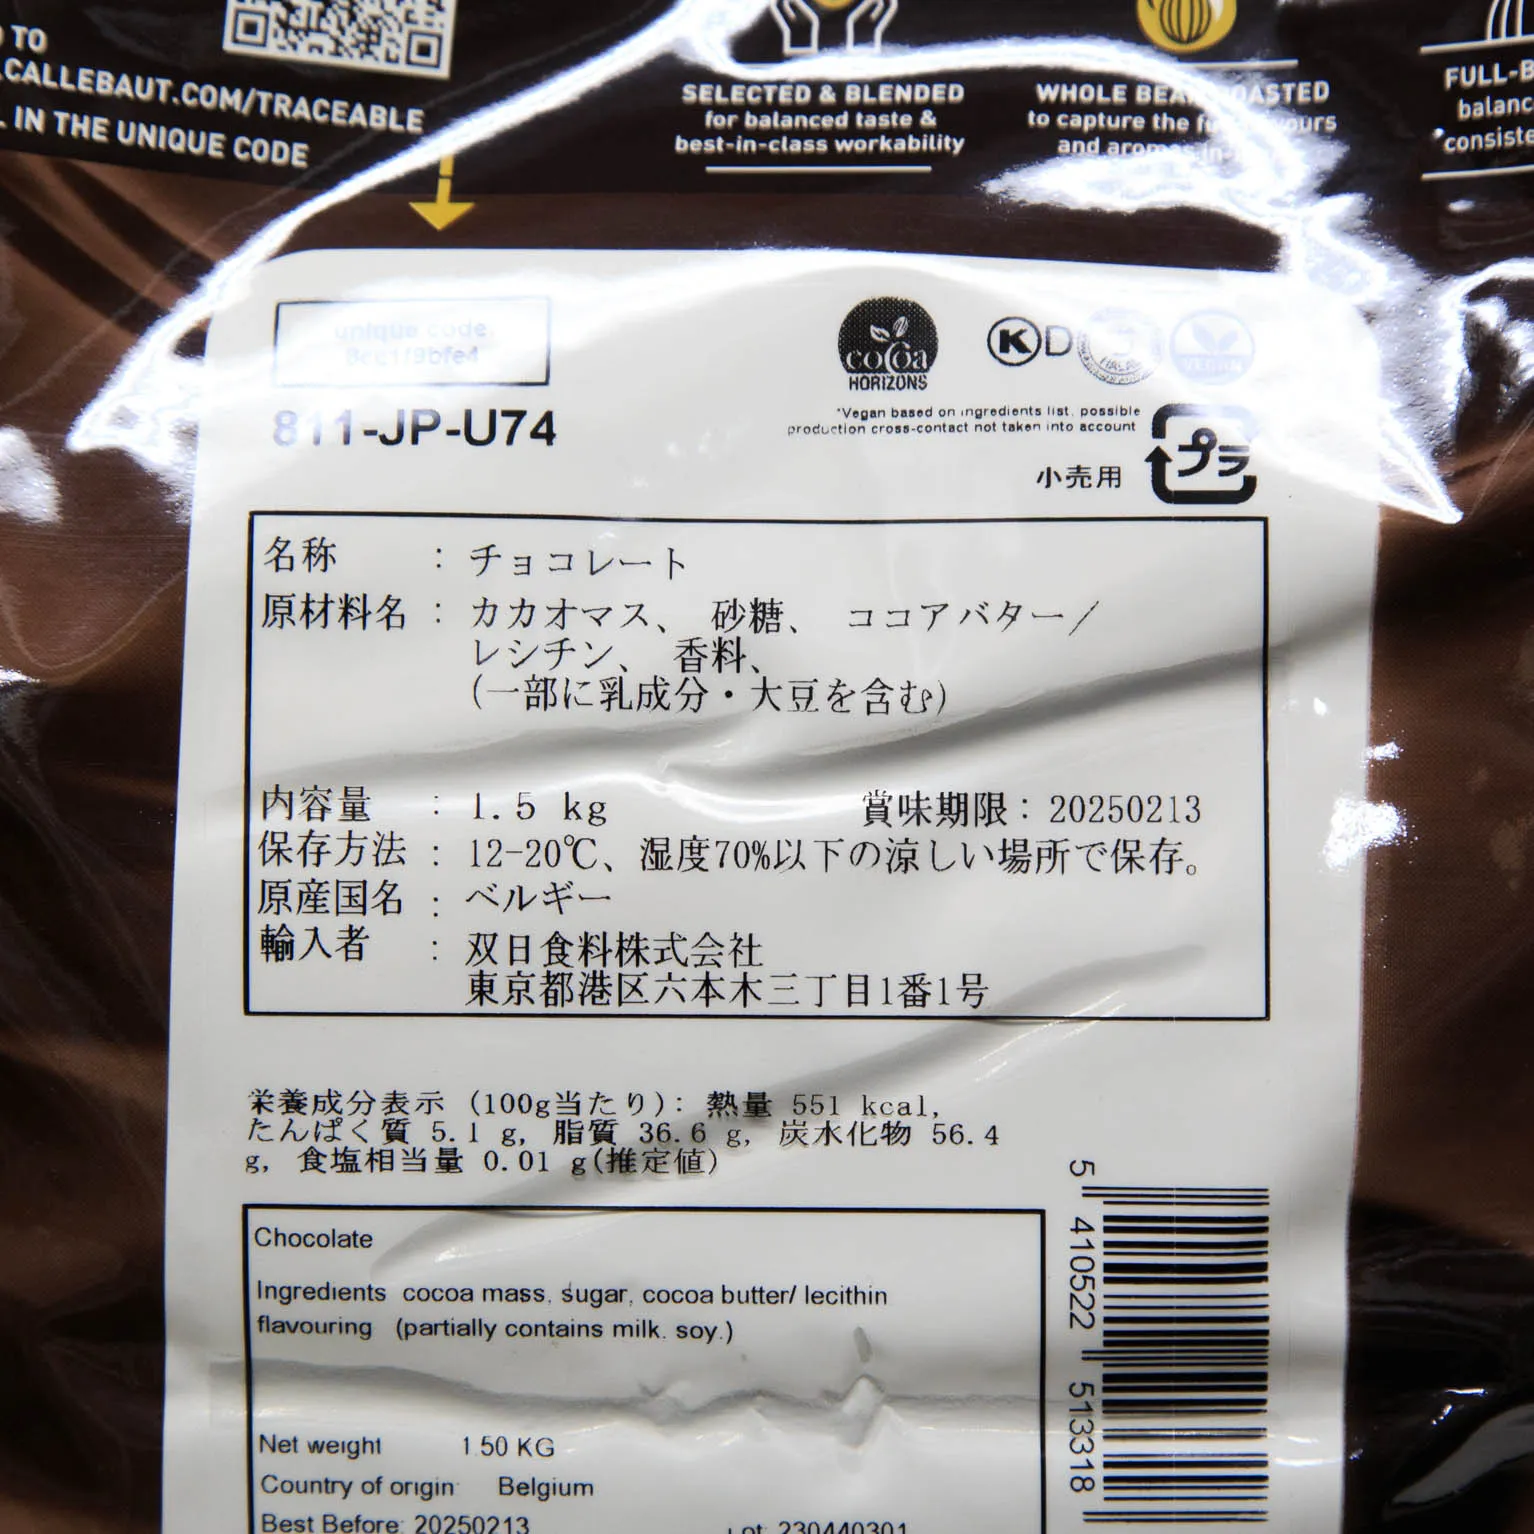 カレボー ダークチョコレート 811 54.5% 1.5